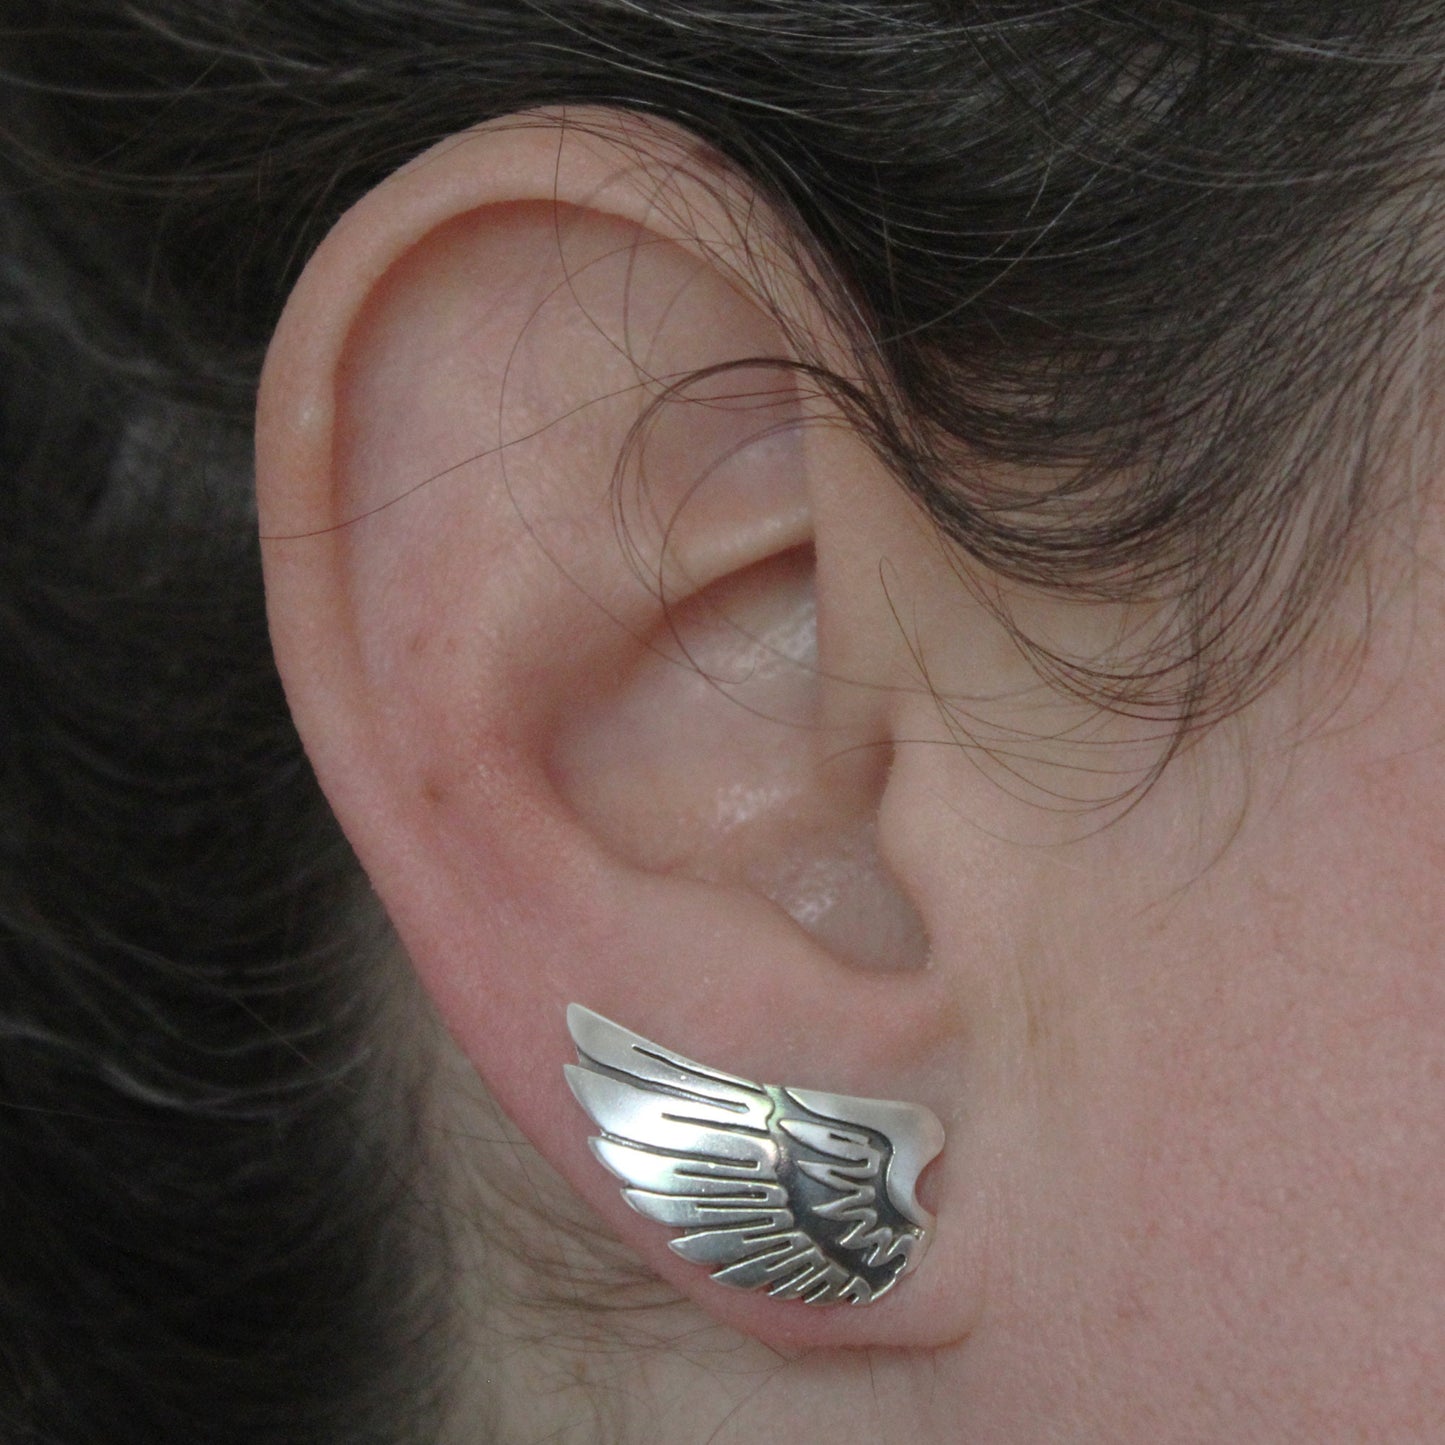 Angel wings earrings in 925 silver